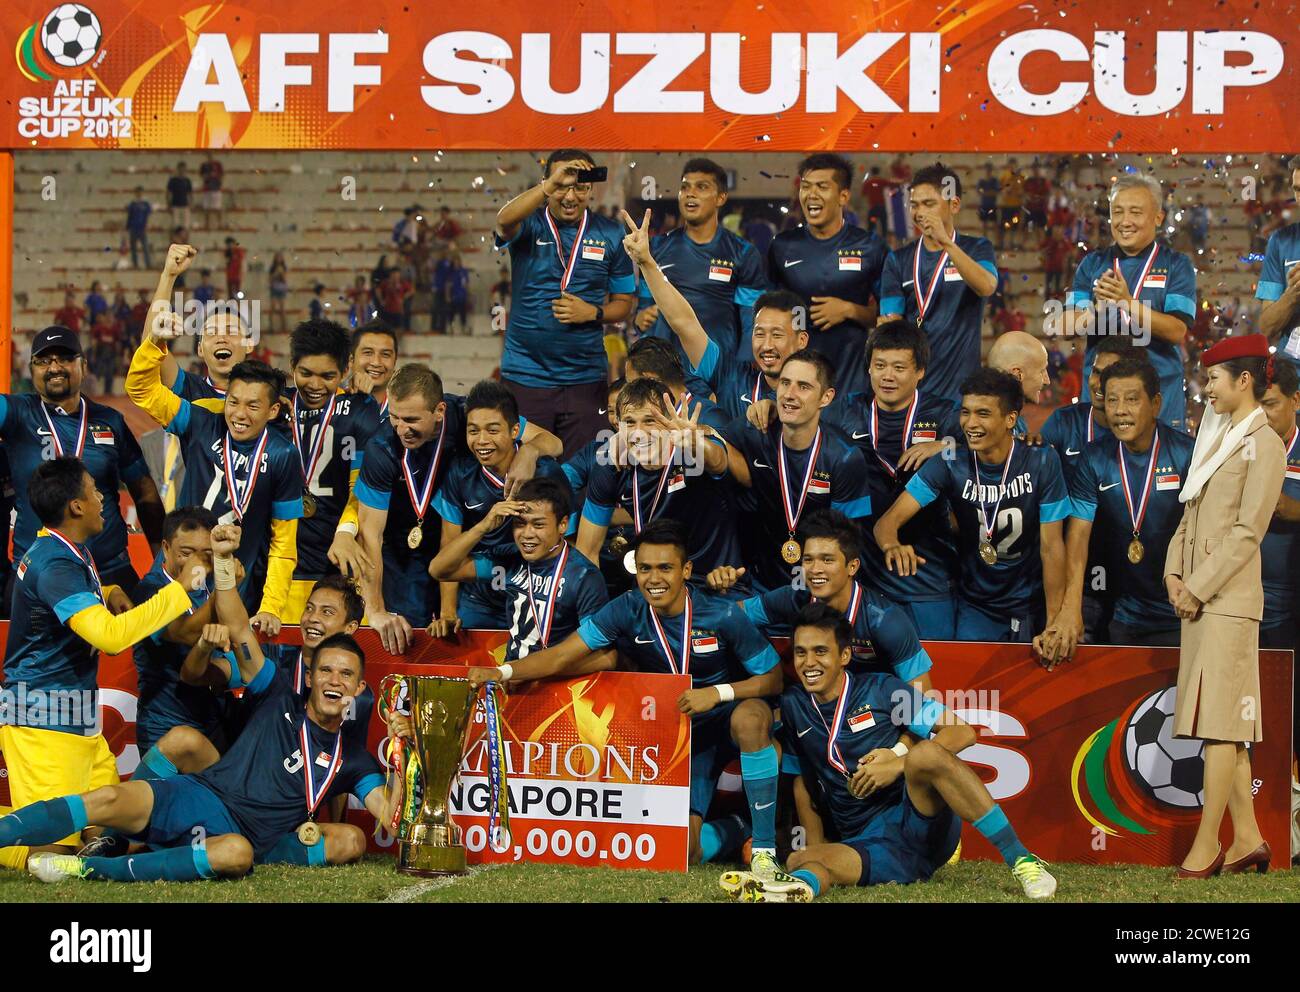 Suzuki staff Team. 2012 cup